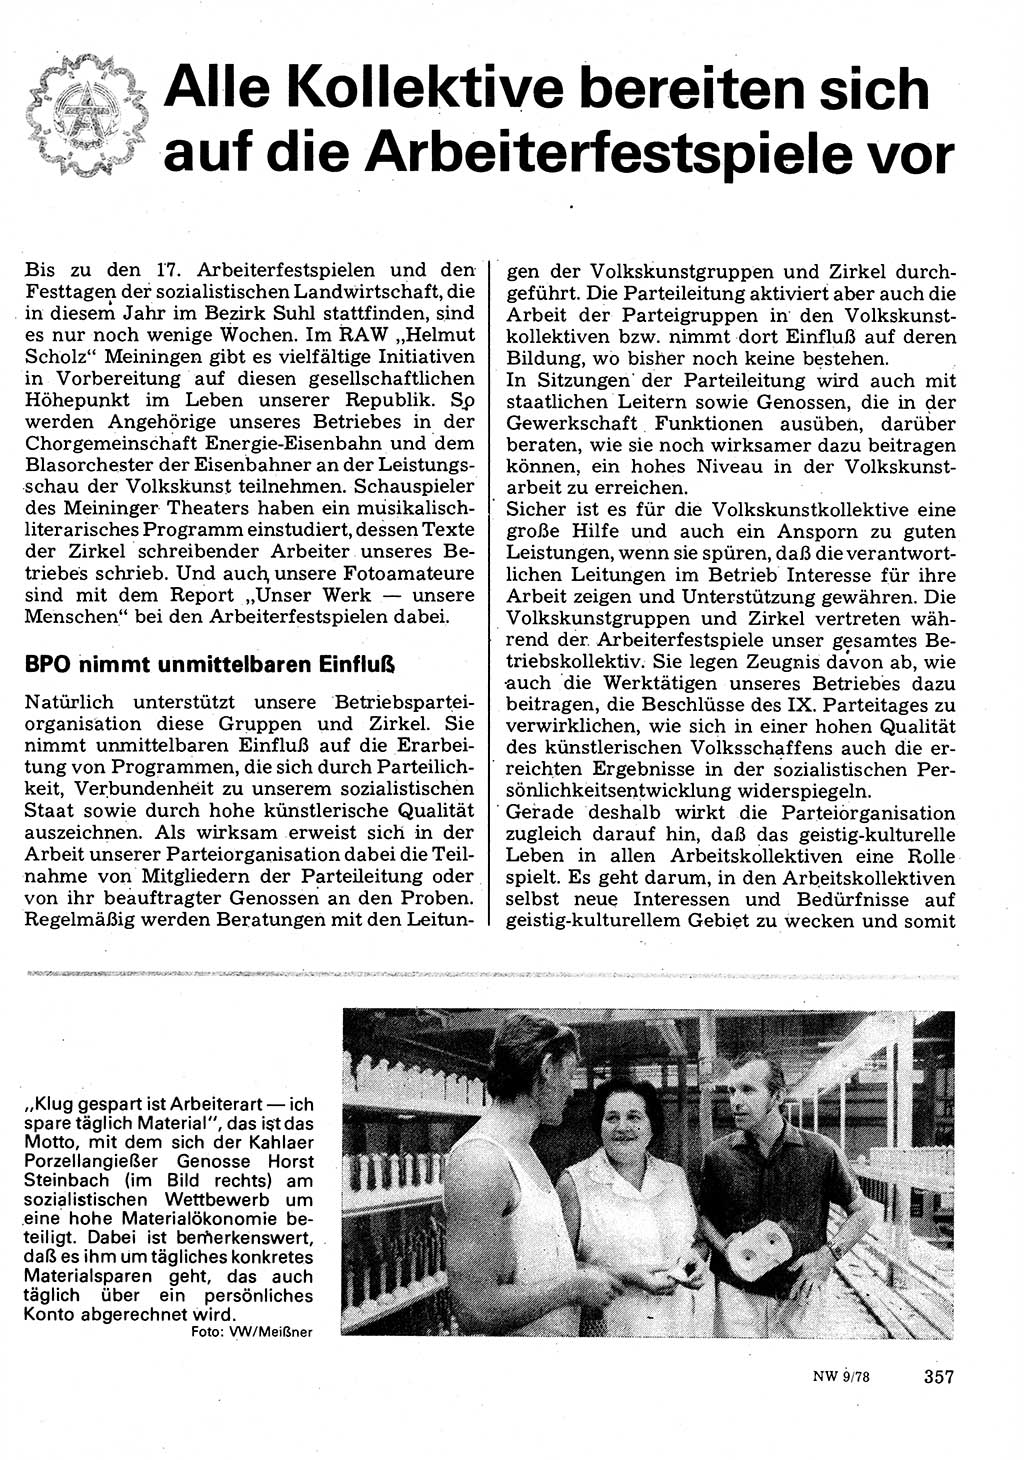 Neuer Weg (NW), Organ des Zentralkomitees (ZK) der SED (Sozialistische Einheitspartei Deutschlands) für Fragen des Parteilebens, 33. Jahrgang [Deutsche Demokratische Republik (DDR)] 1978, Seite 357 (NW ZK SED DDR 1978, S. 357)